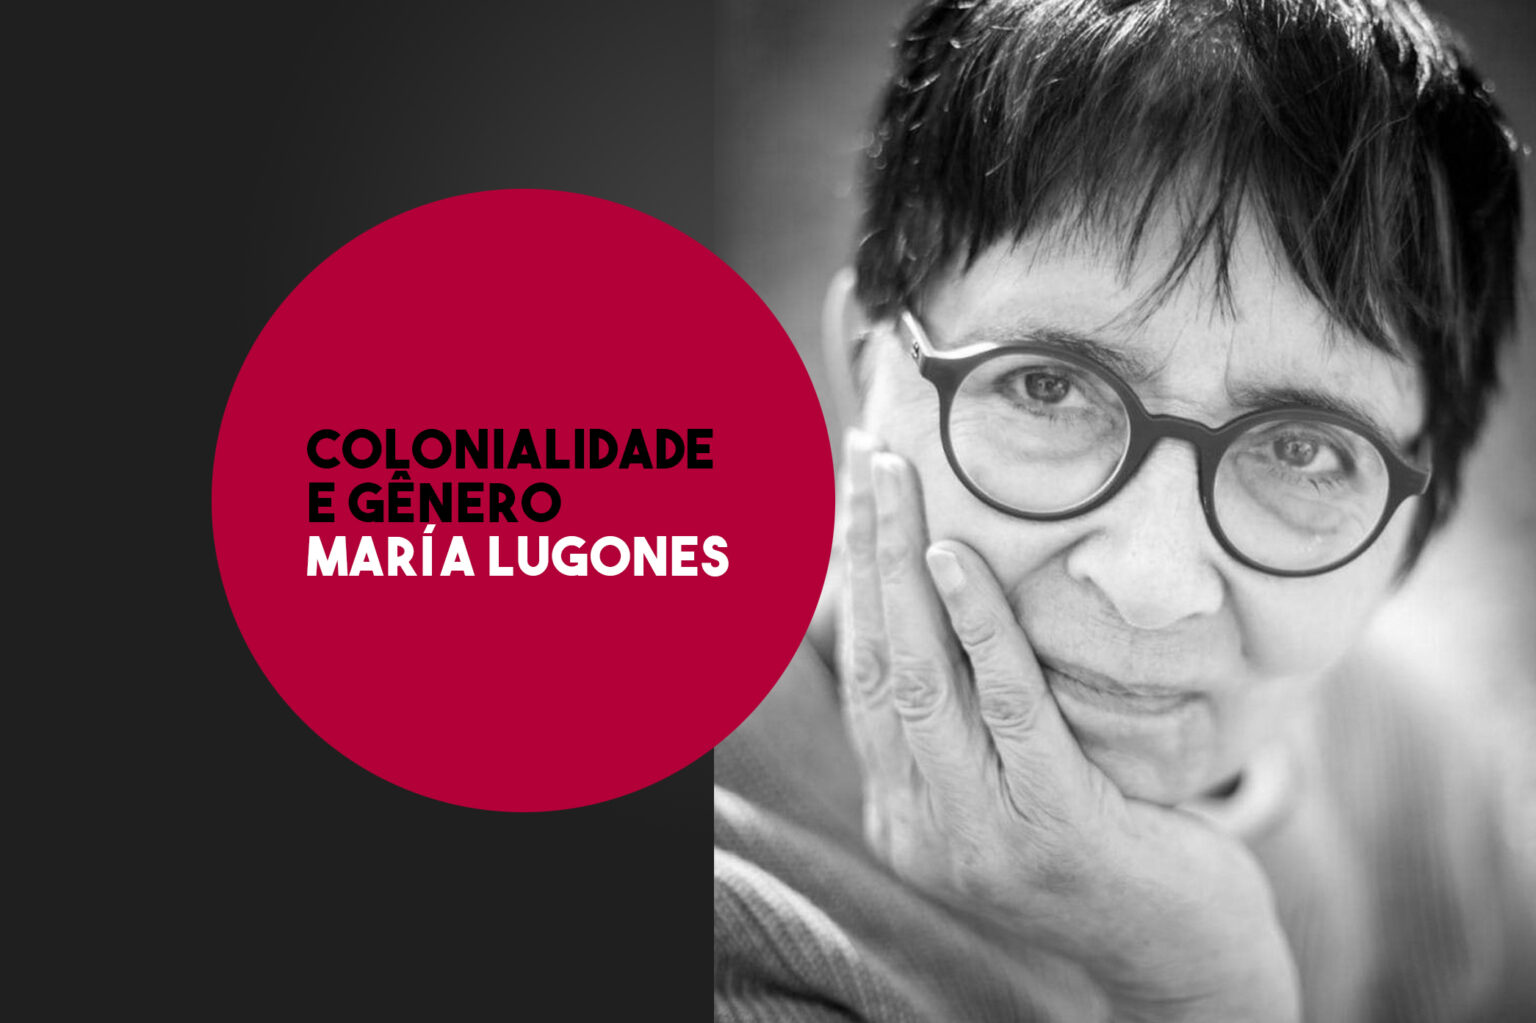 Colonialidade e gênero por María Lugones Bazar do Tempo. 